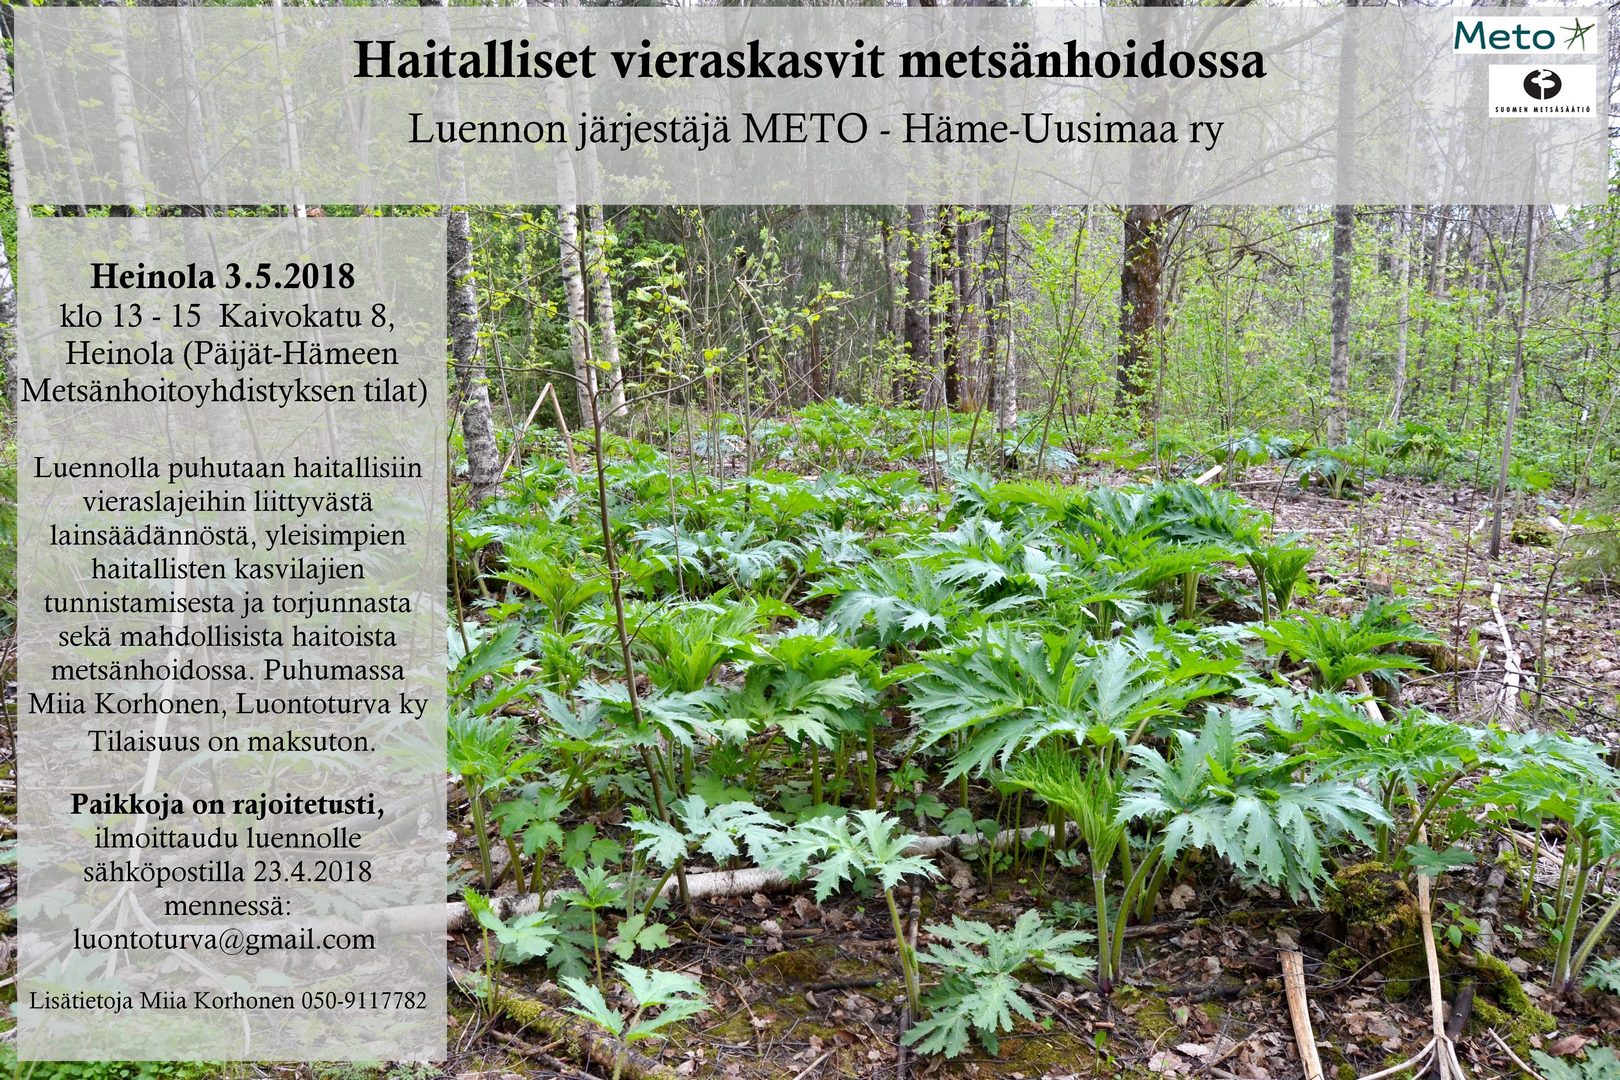 Heinola_3.5.2018_Haitalliset_vieraskasvit_metsanhoidossa_luento_METO_Hame-Uusimaa.JPG